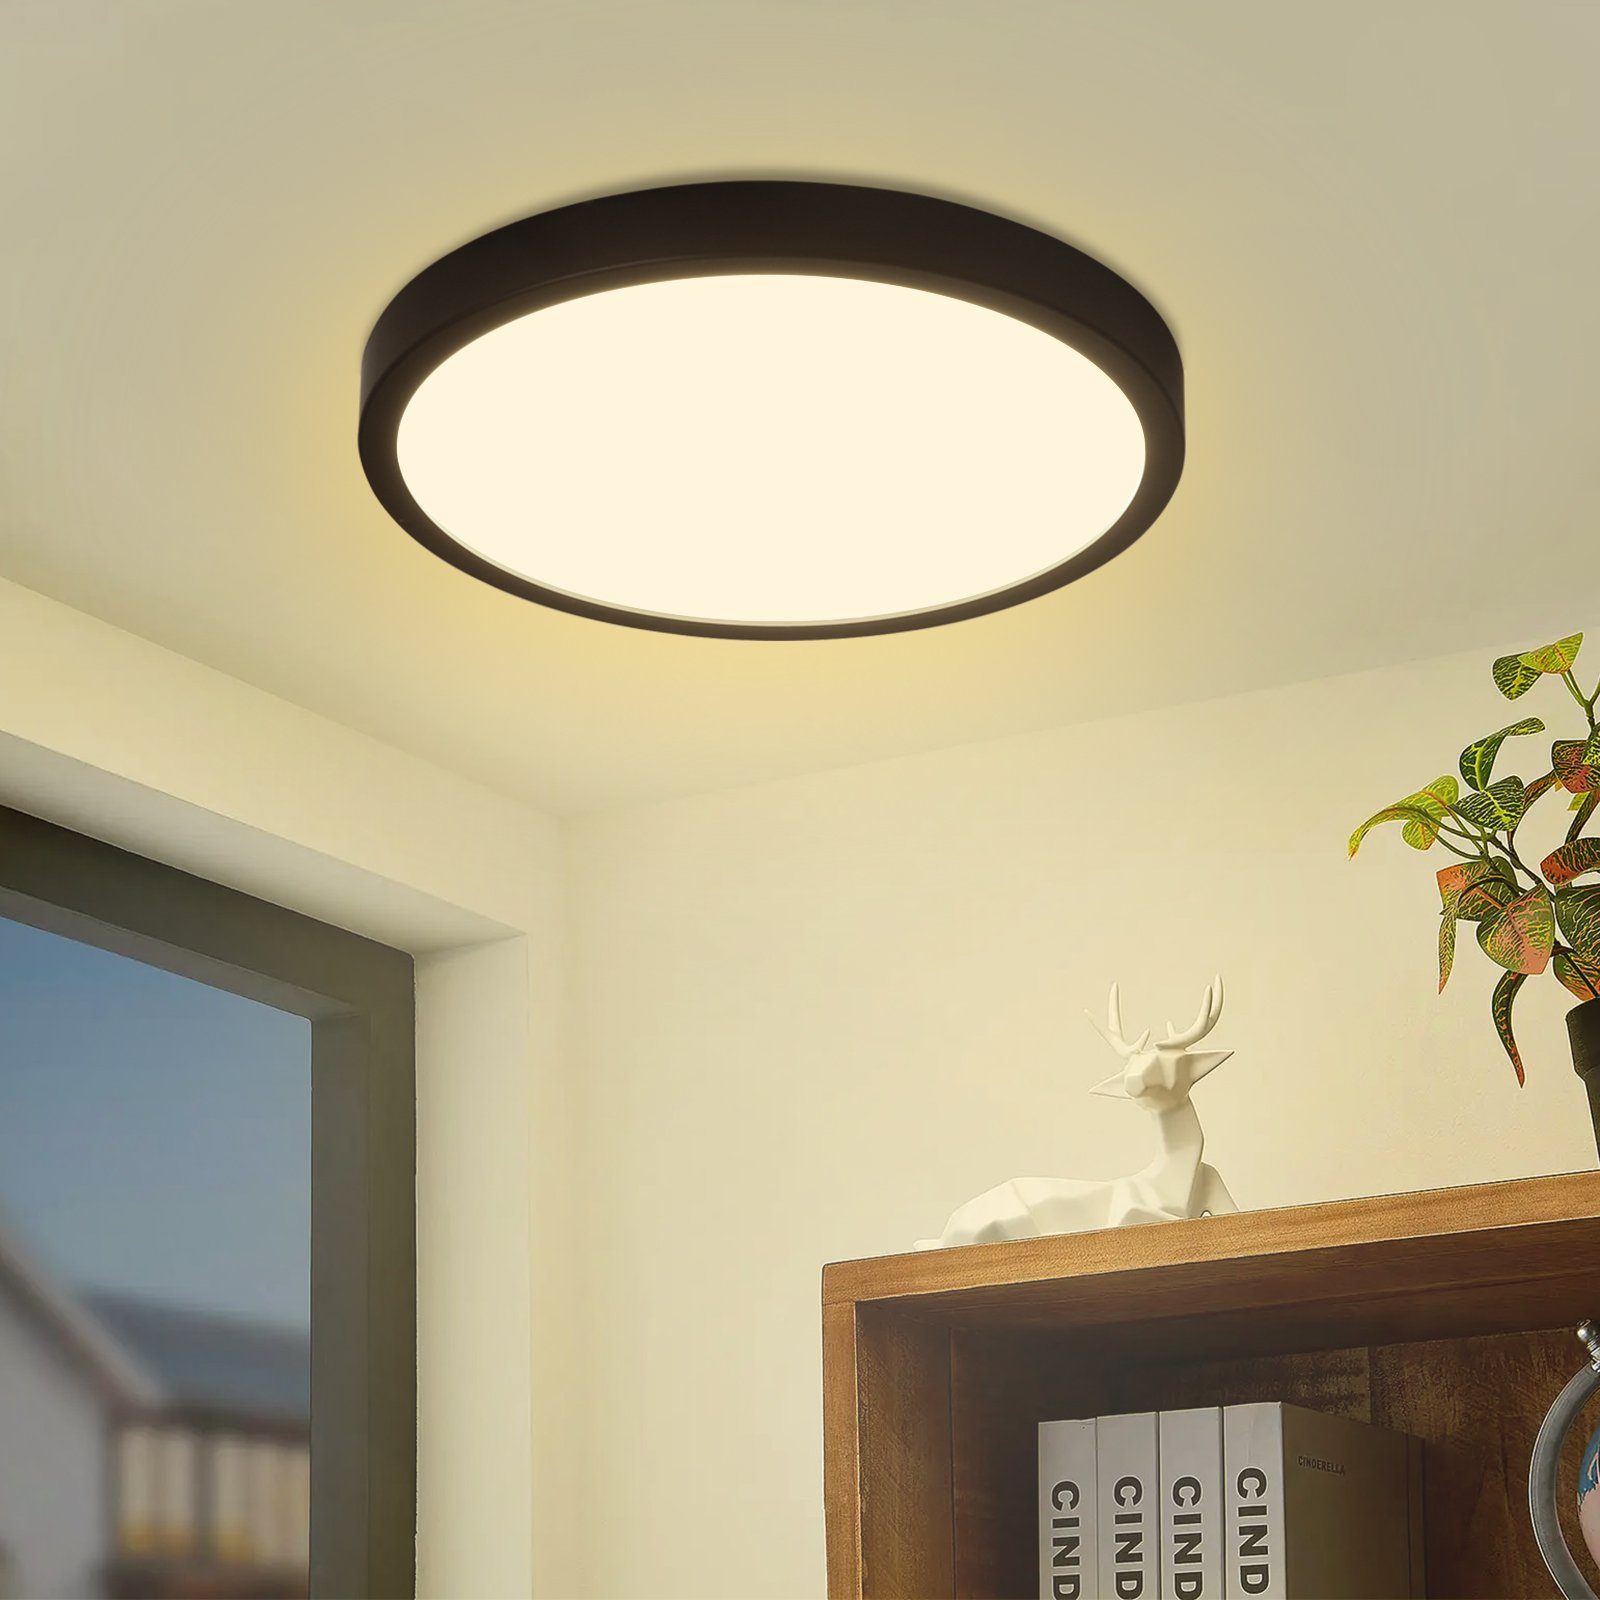 Nettlife LED Panel Schwarz Deckenlampe Rund Flach Modern Ultra Dünn, IP44 Wasserdicht, LED fest integriert, Warmweiß, für Wohnzimmer Badezimmer Schlafzimmer Flur, 24W, 23 x 23 x 2.1 cm